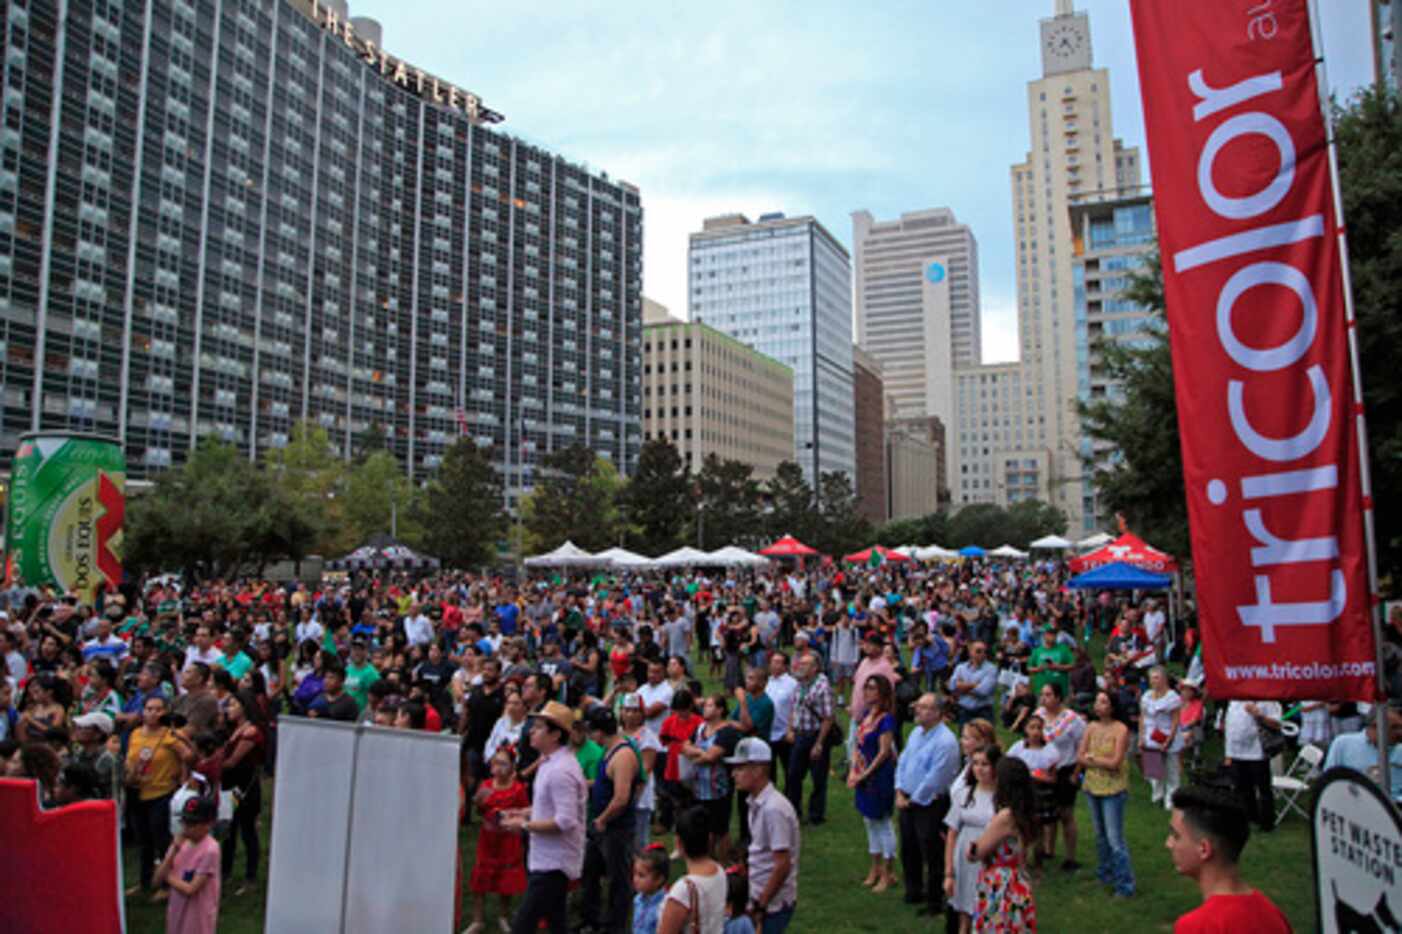 
				Ciento de personas llegaron hasta Main St. Park para celebra las Fiestas Patrias...